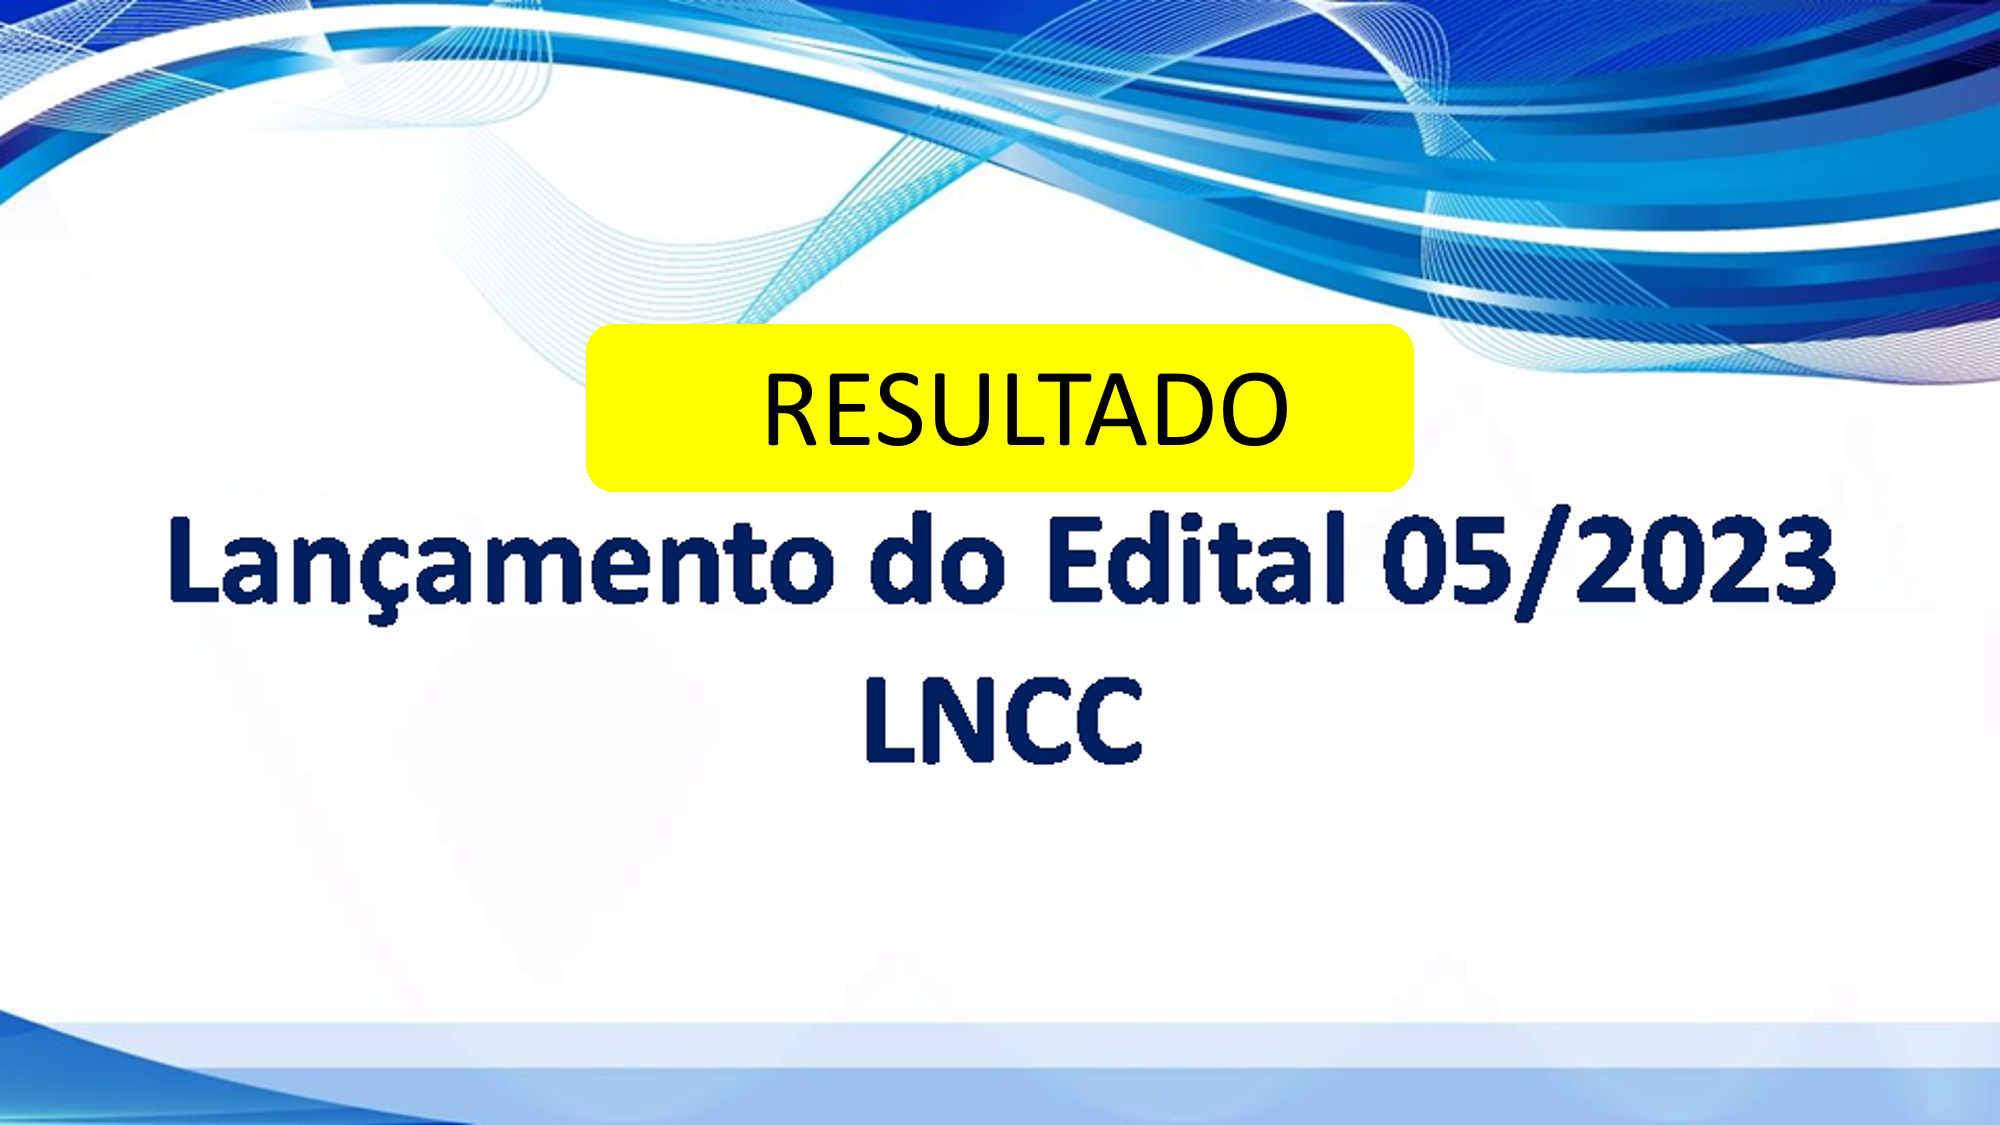 Resultado Edital 05/2023 – Edital Santos Dumont